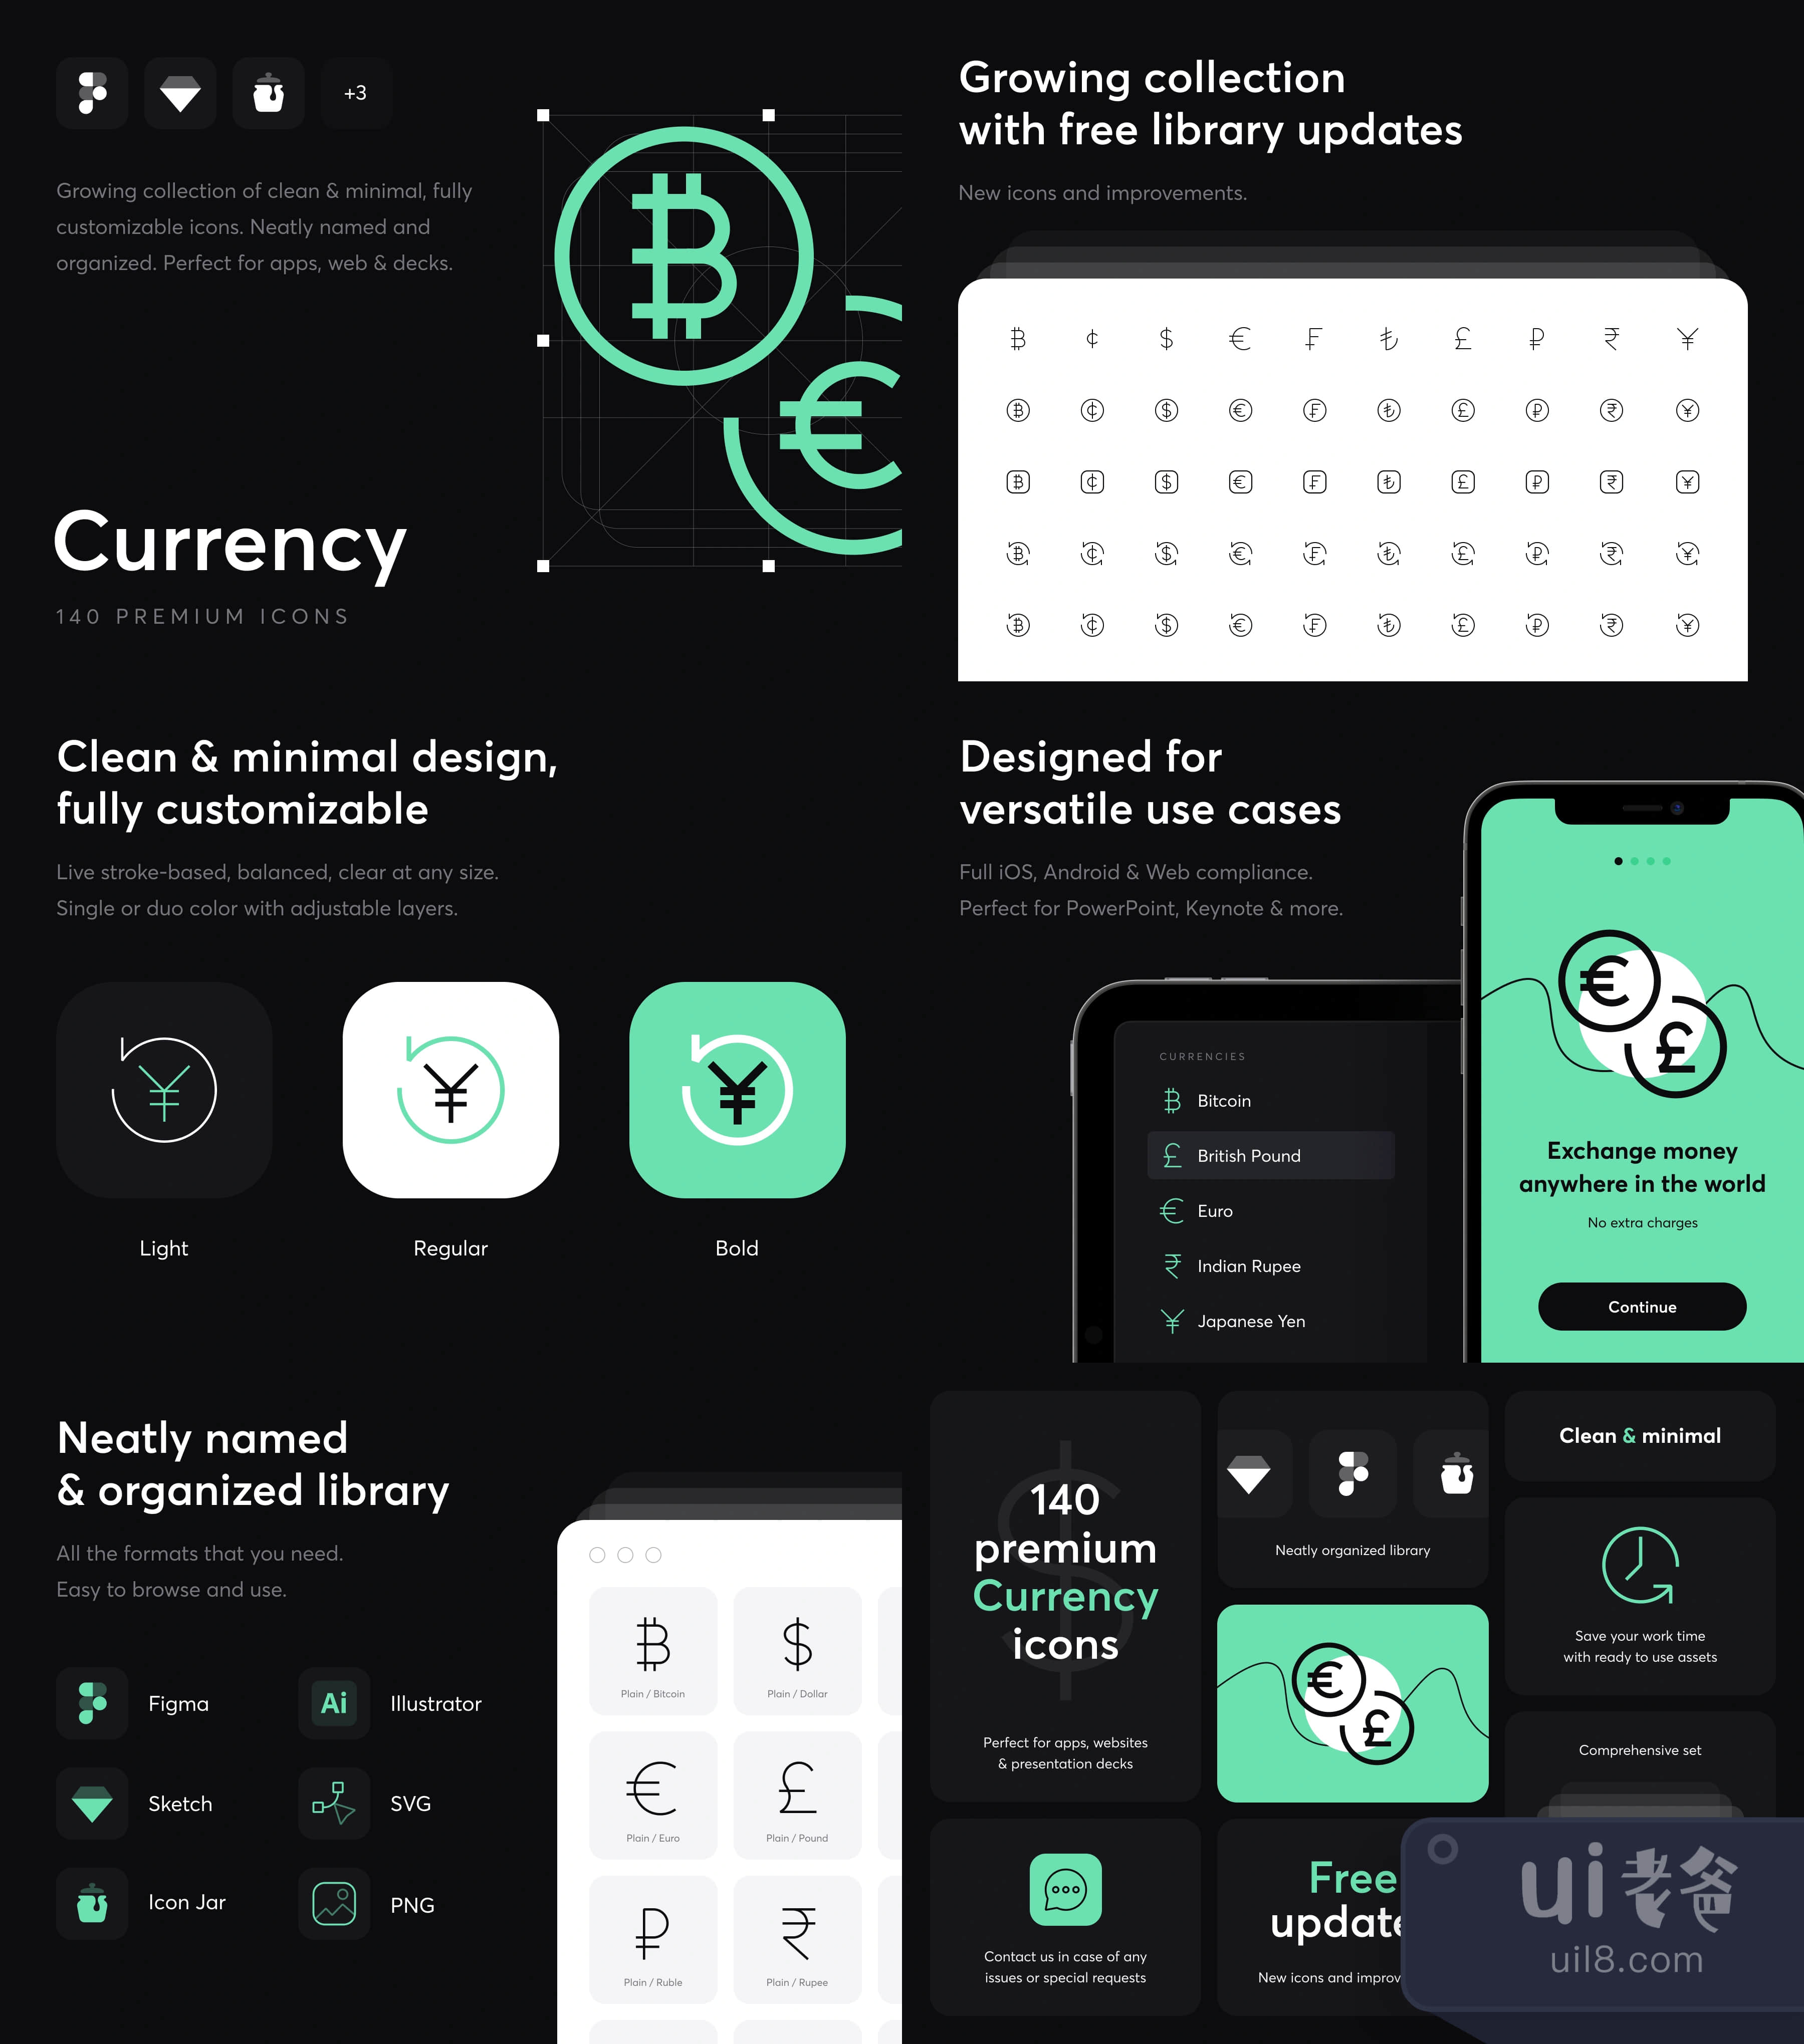 货币 - 高级图标 (Currency - Premium Icons)插图1